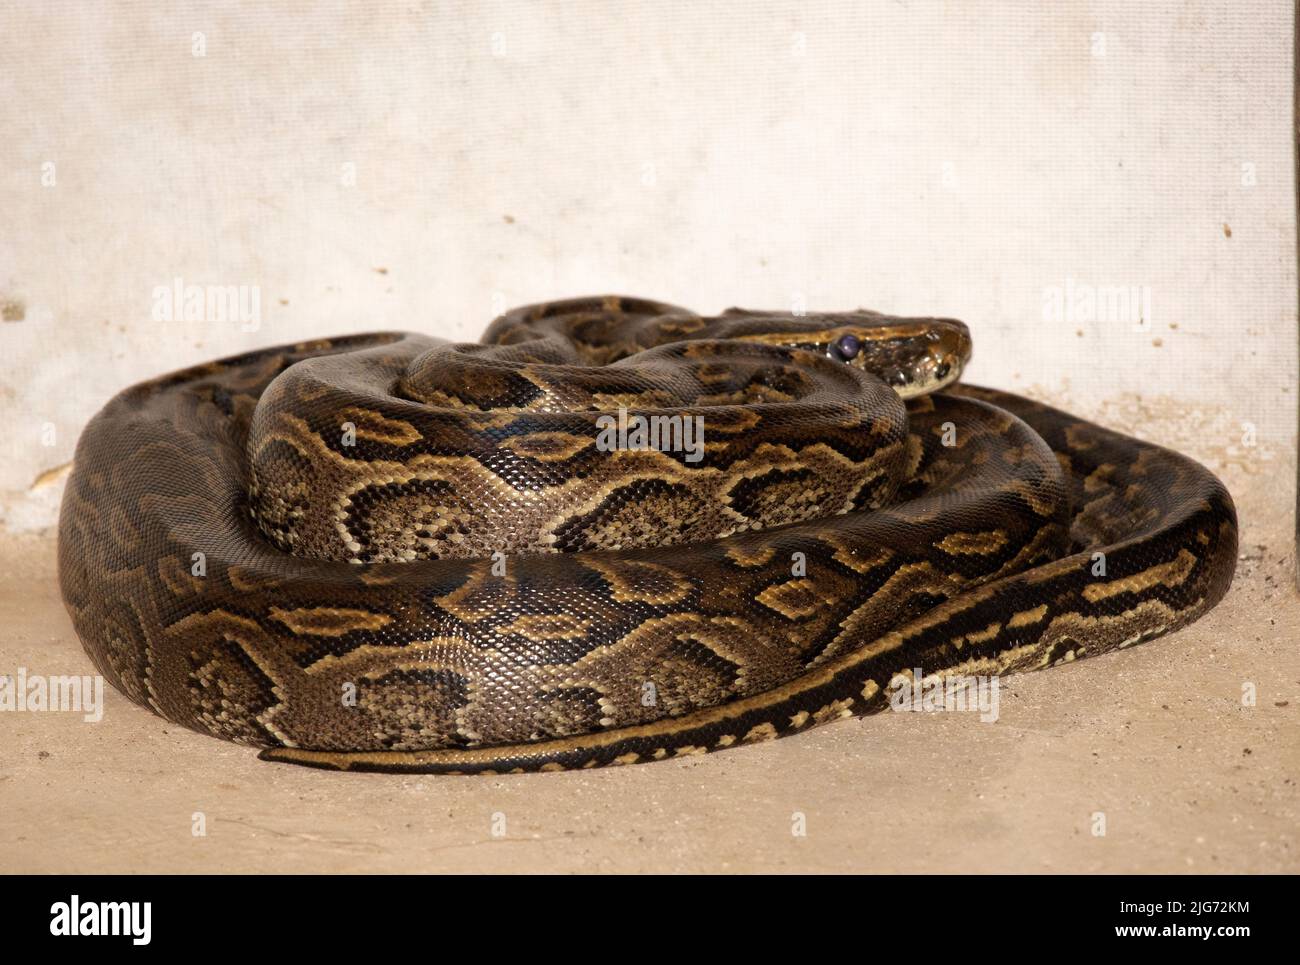 Un python rocheuse d'Afrique centrale récemment taillé a des marques brillantes, mais un peu plus sombres que son proche parent, le python rocheuse d'Afrique australe. Banque D'Images